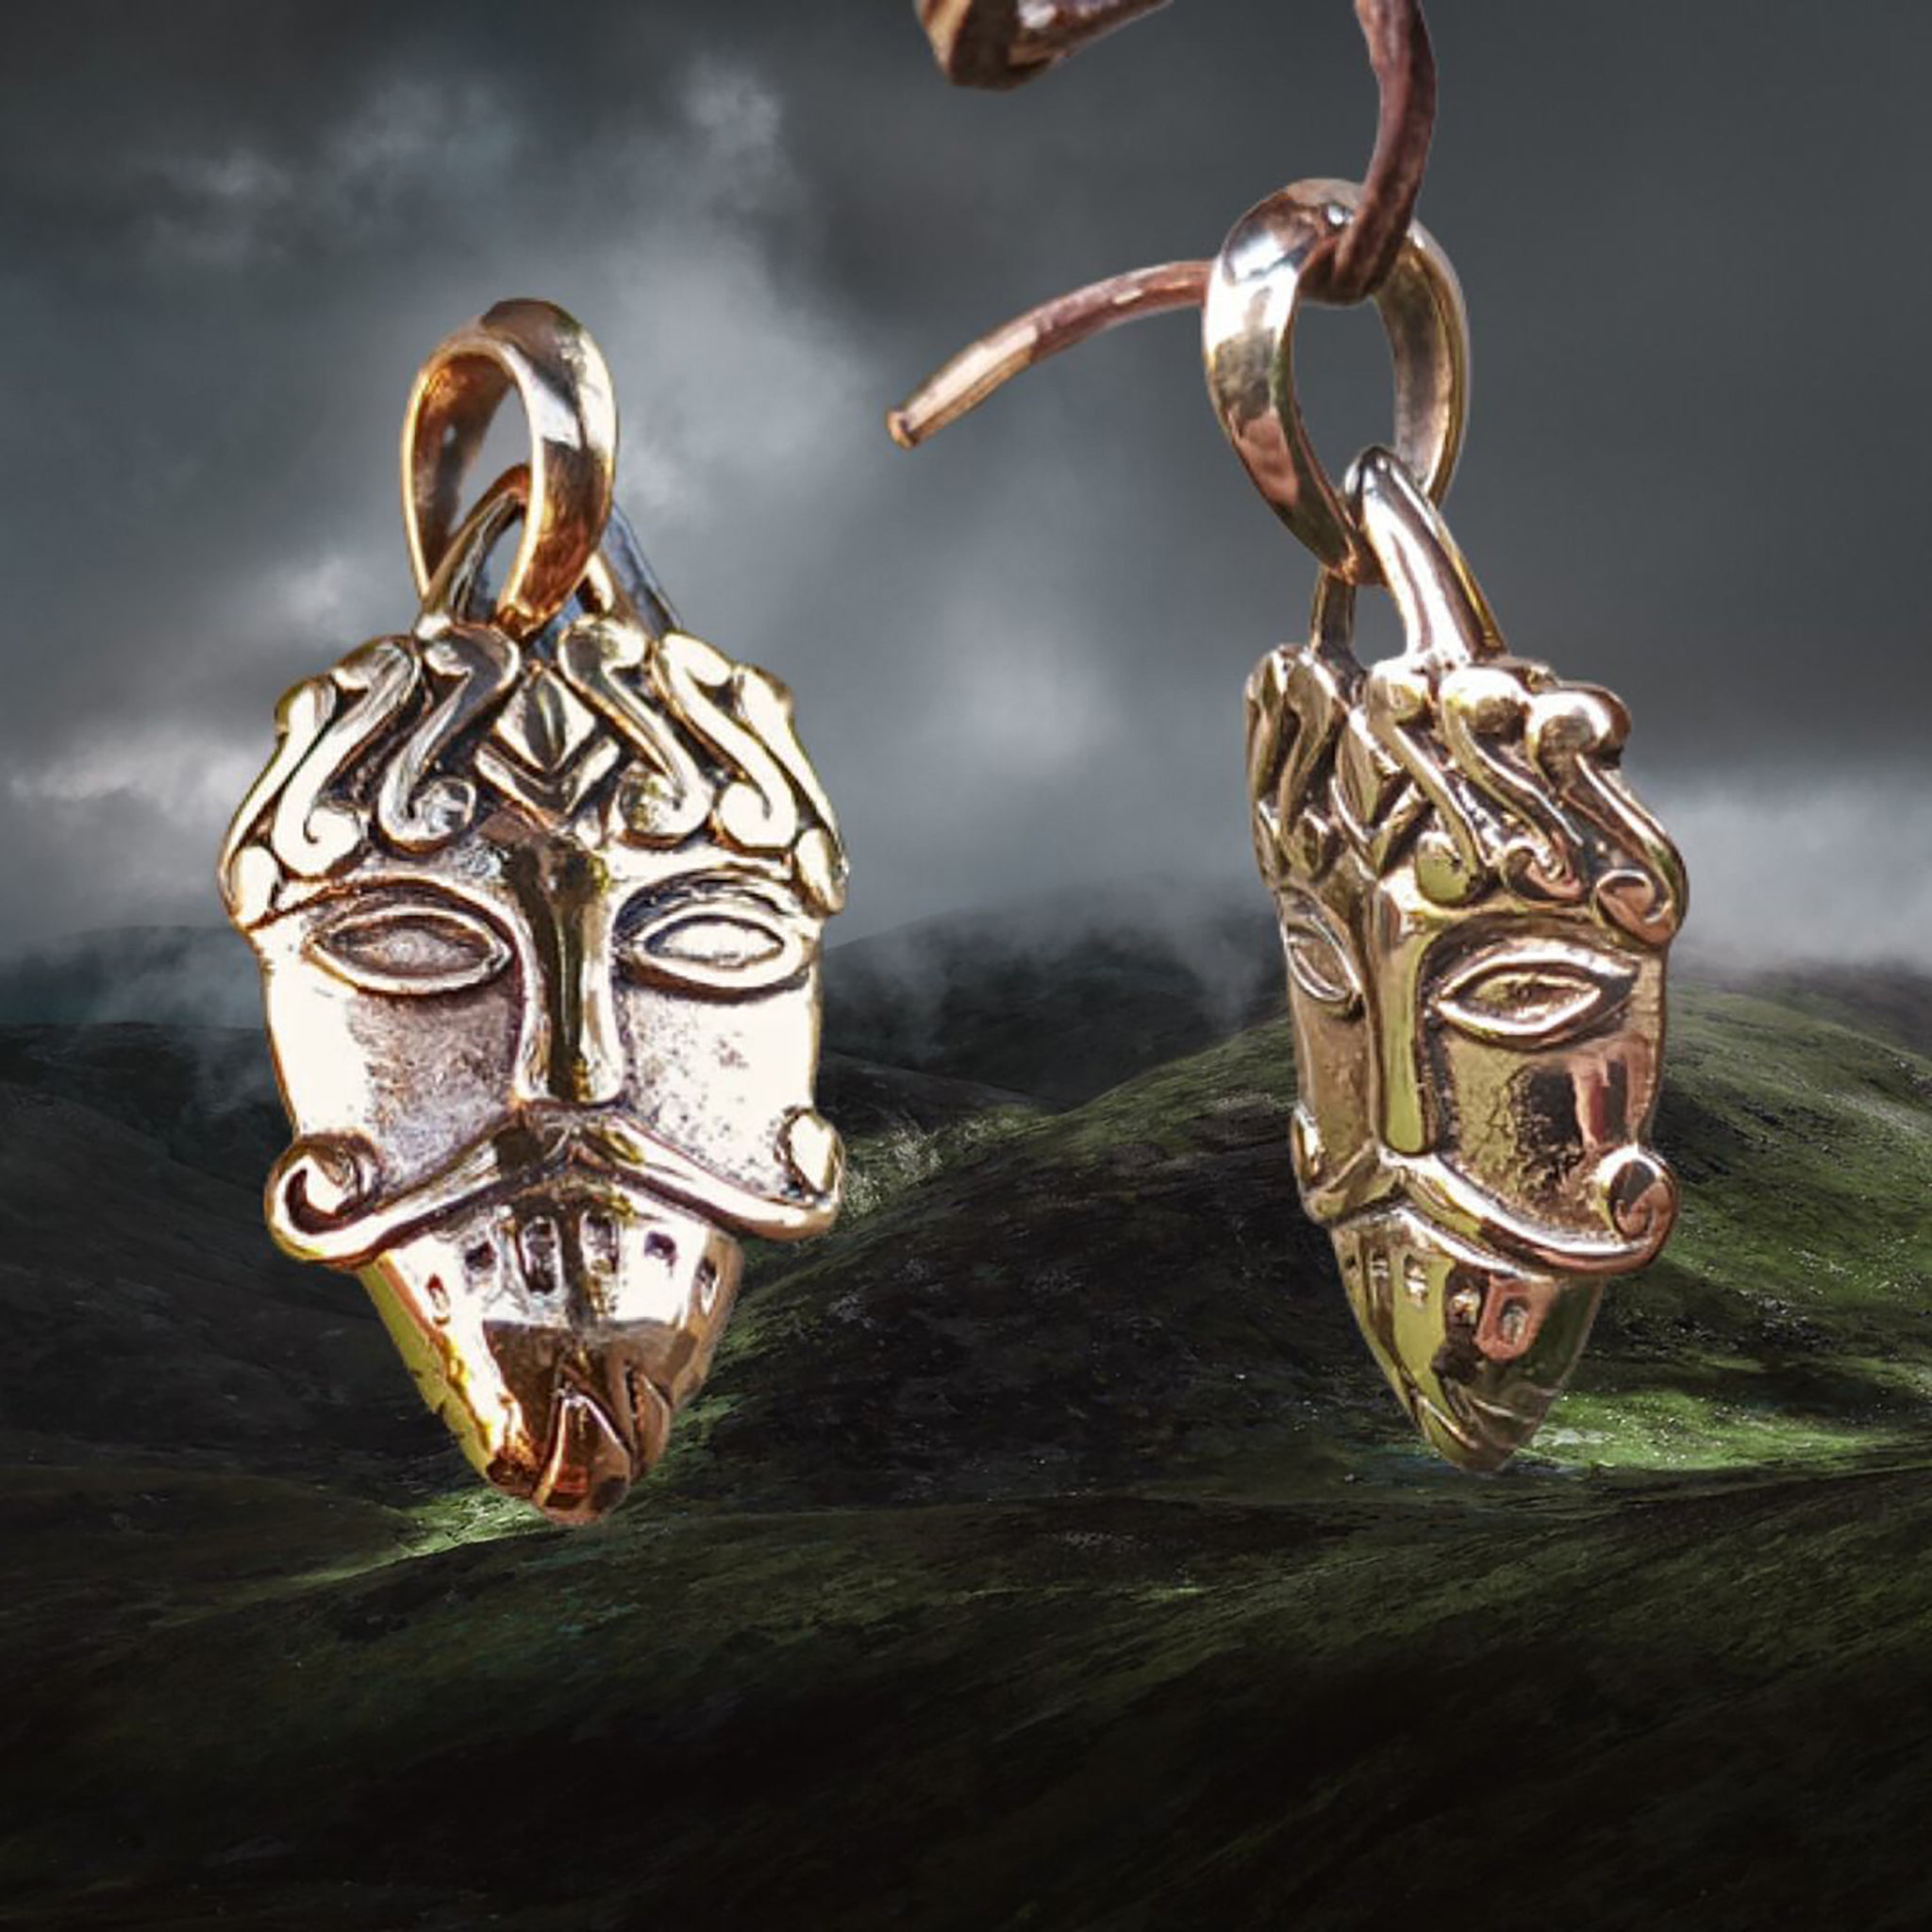 Bronze Loki Mask Pendant on Mystical Mountains Background